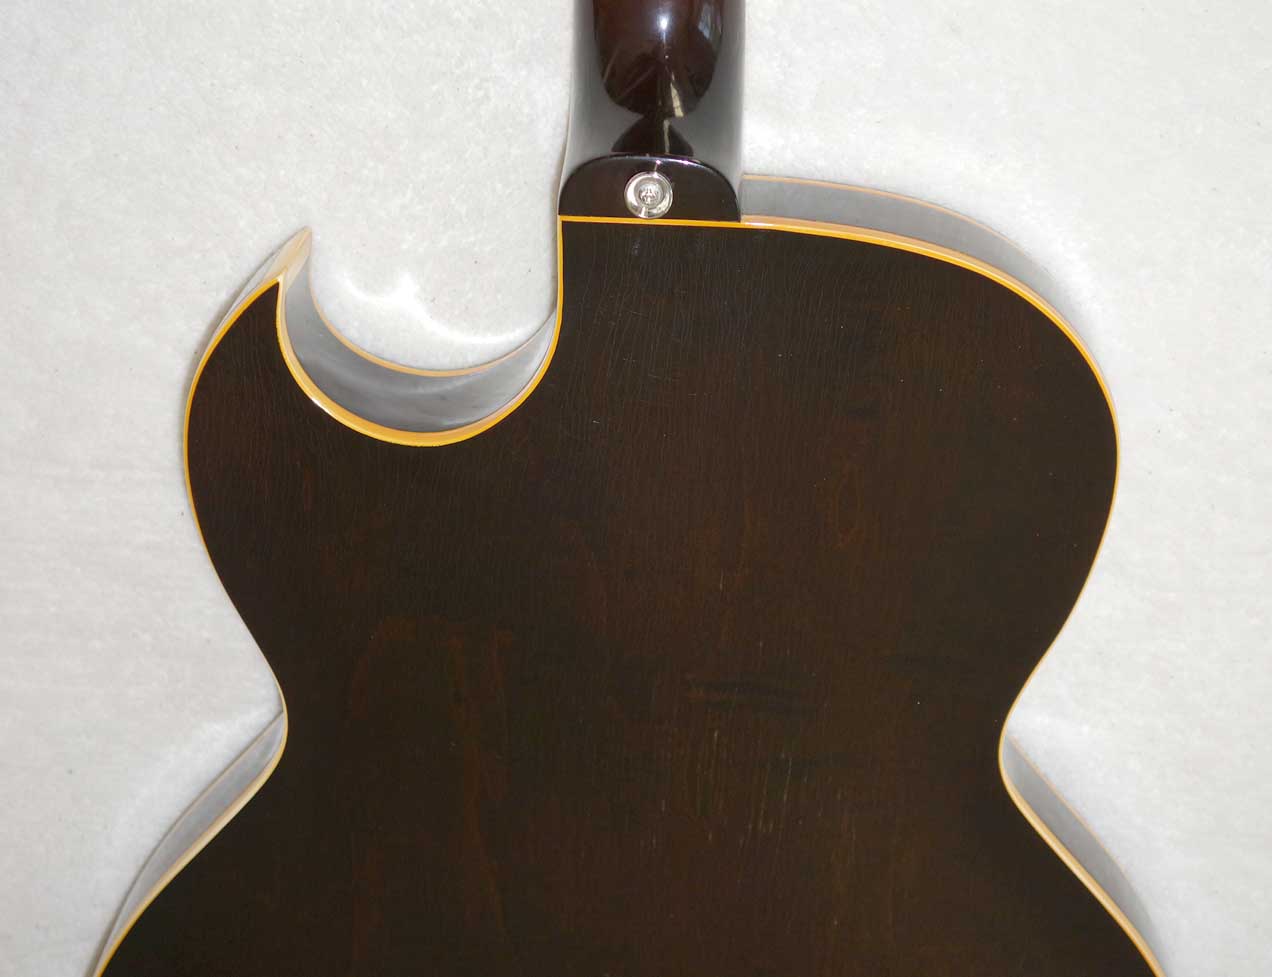 VINTAGE 1956 Gibson ES225 Guitar, w/3x Rio Grande Dawgbucker PUs, 6-Way Switch, Ameritage Case